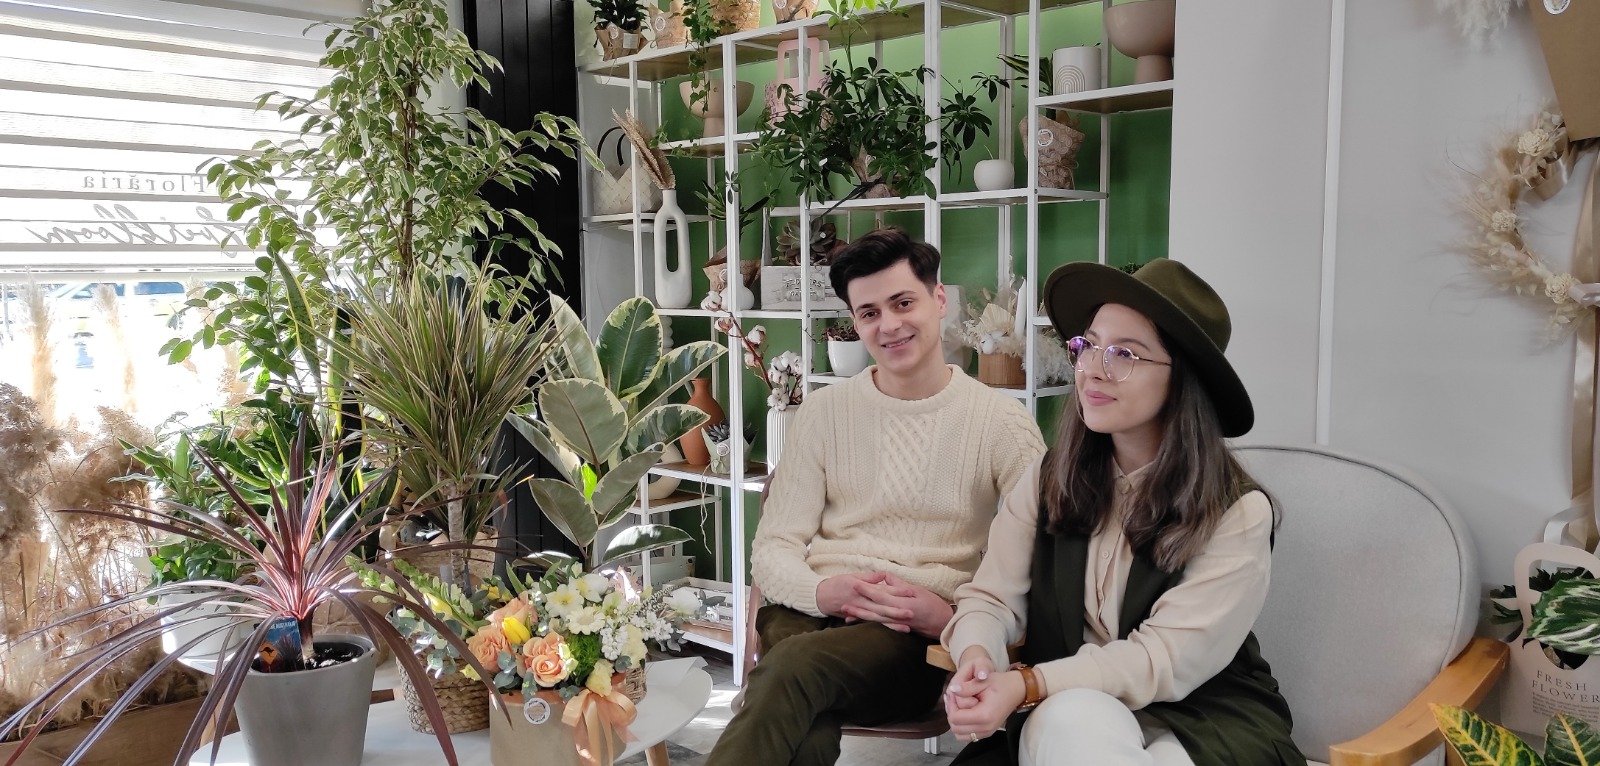  Primul atelier floral sustenabil, creat cu fonduri europene, deschis în Iaşi. Peisagiştii: doi absolvenţi ai Universităţii de Ştiinţele Vieţii